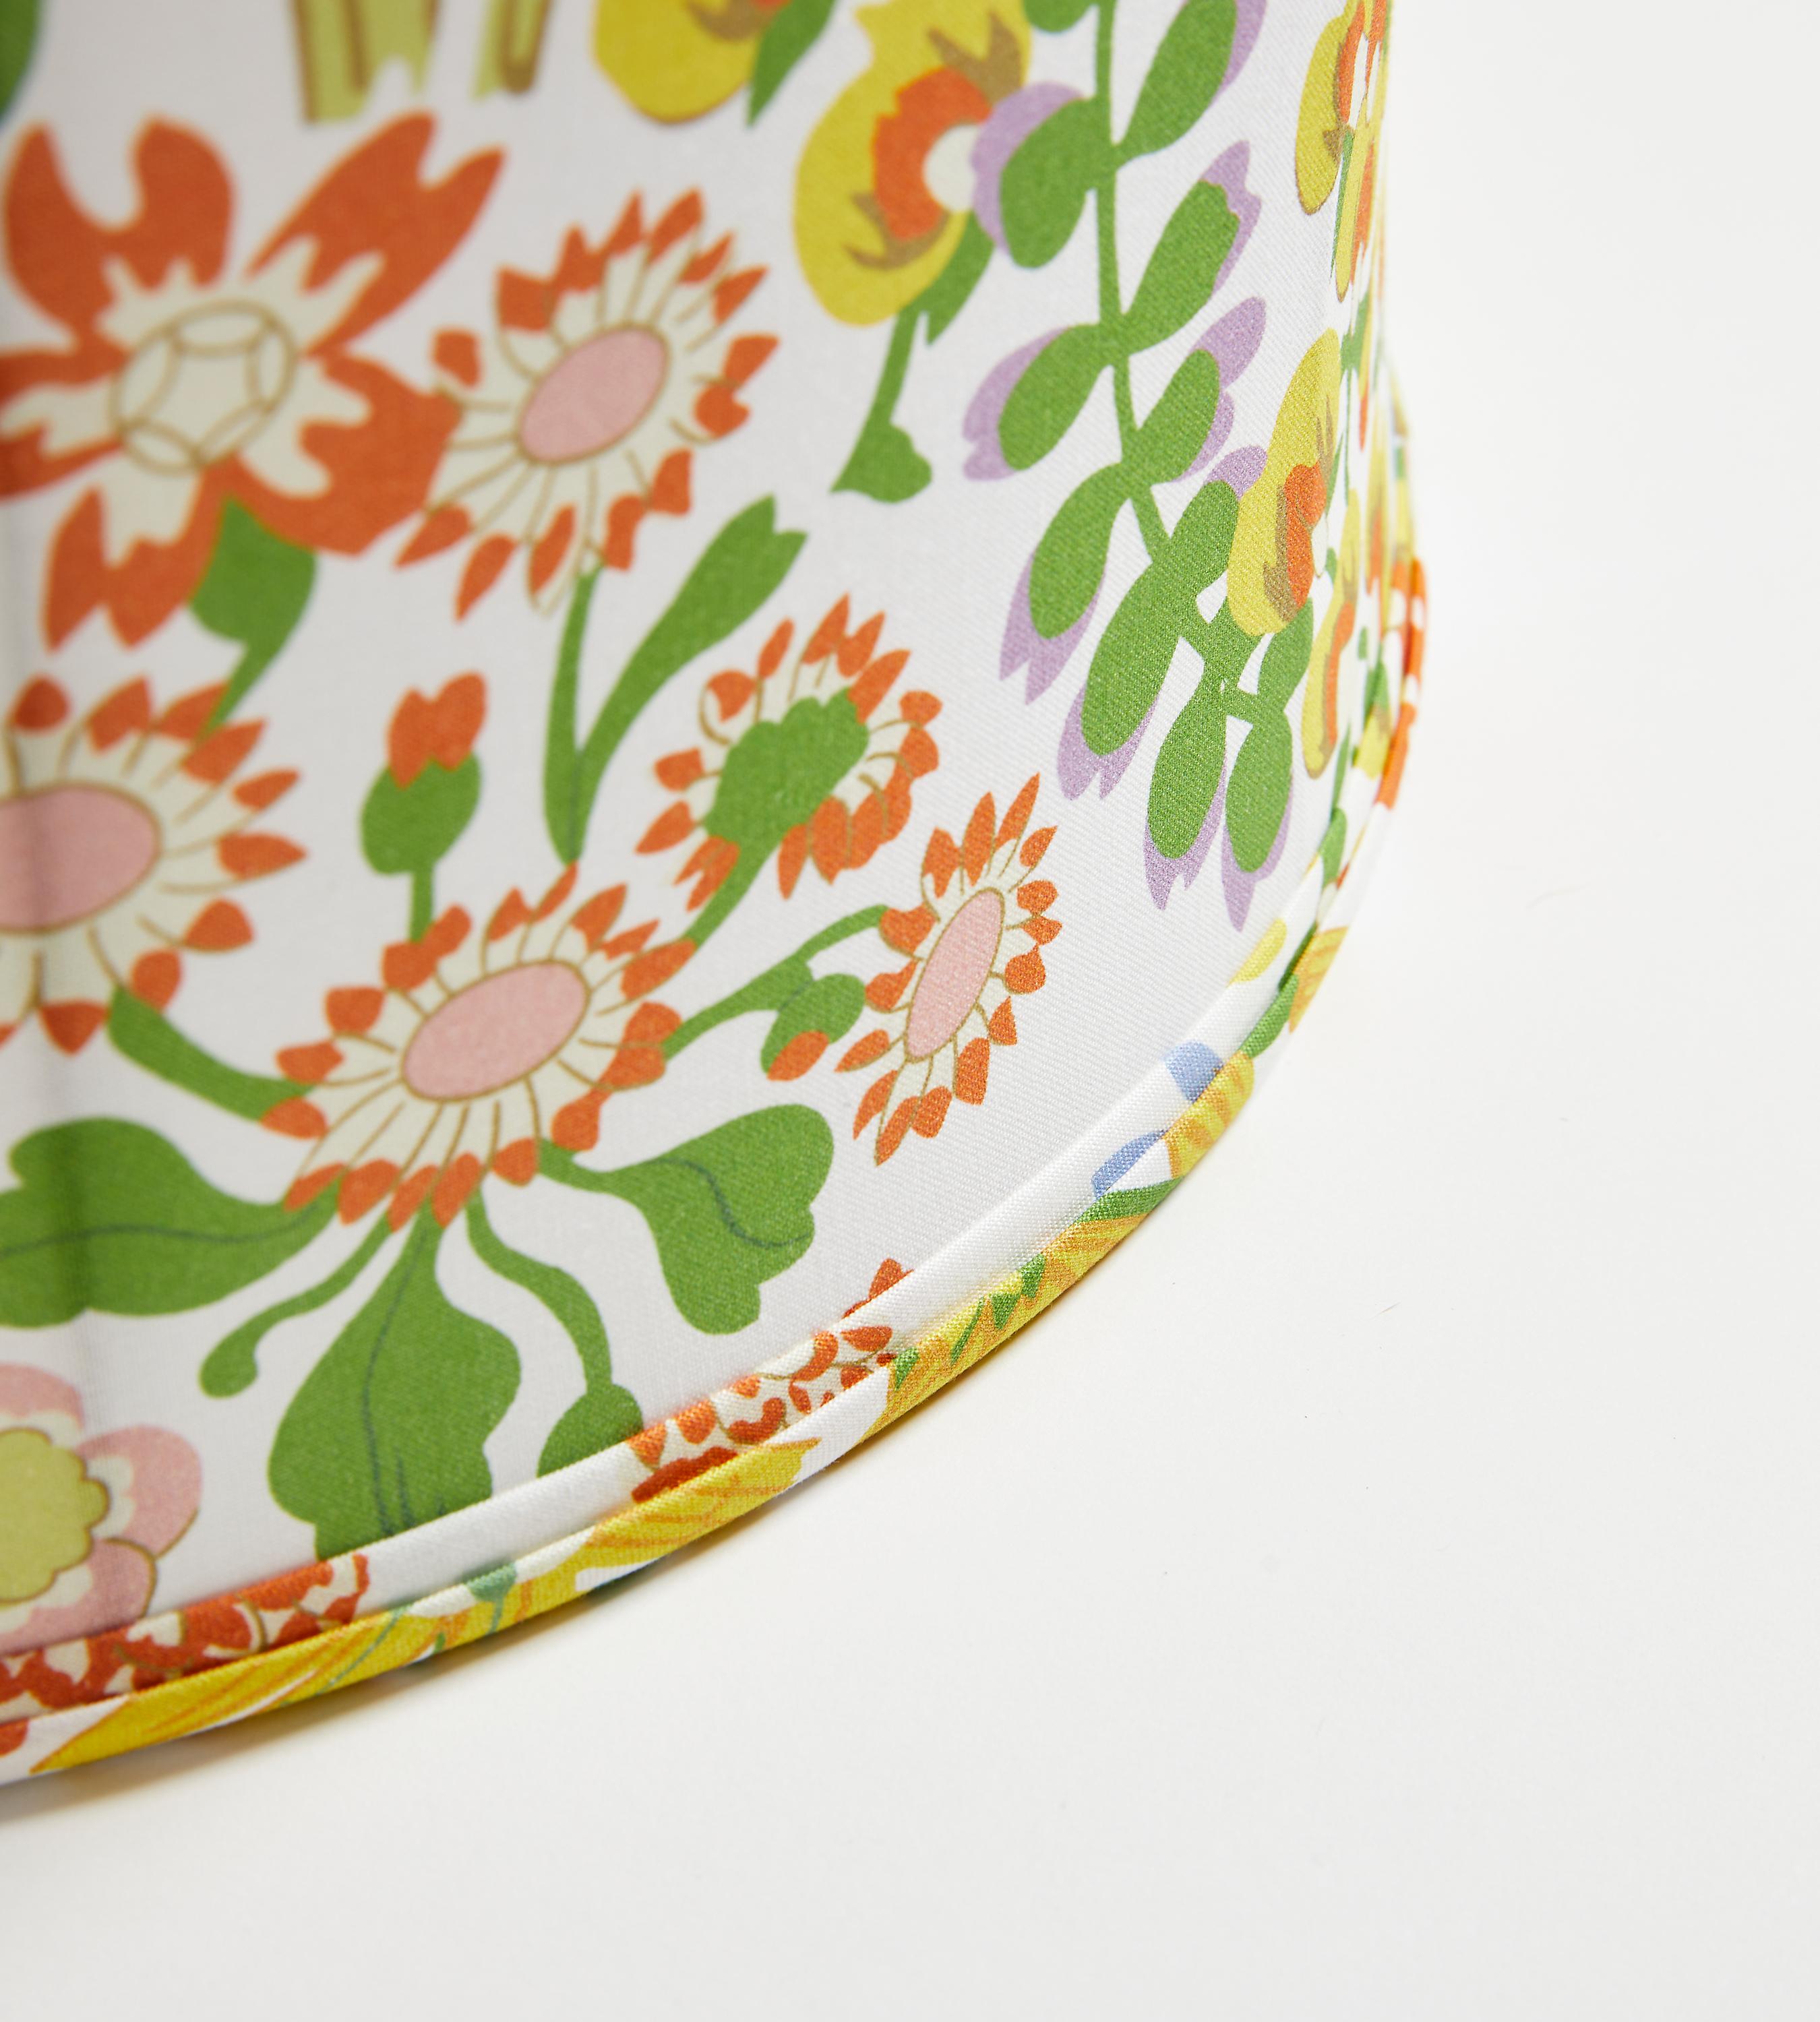 Nymph Floral, un motif très apprécié de Grey Watkins, est disponible sous forme de tissus imprimés, de coussins luxueux et, désormais, de magnifiques abat-jour fabriqués à la main dans des styles tambour et plissé. Nouvelle interprétation d'un